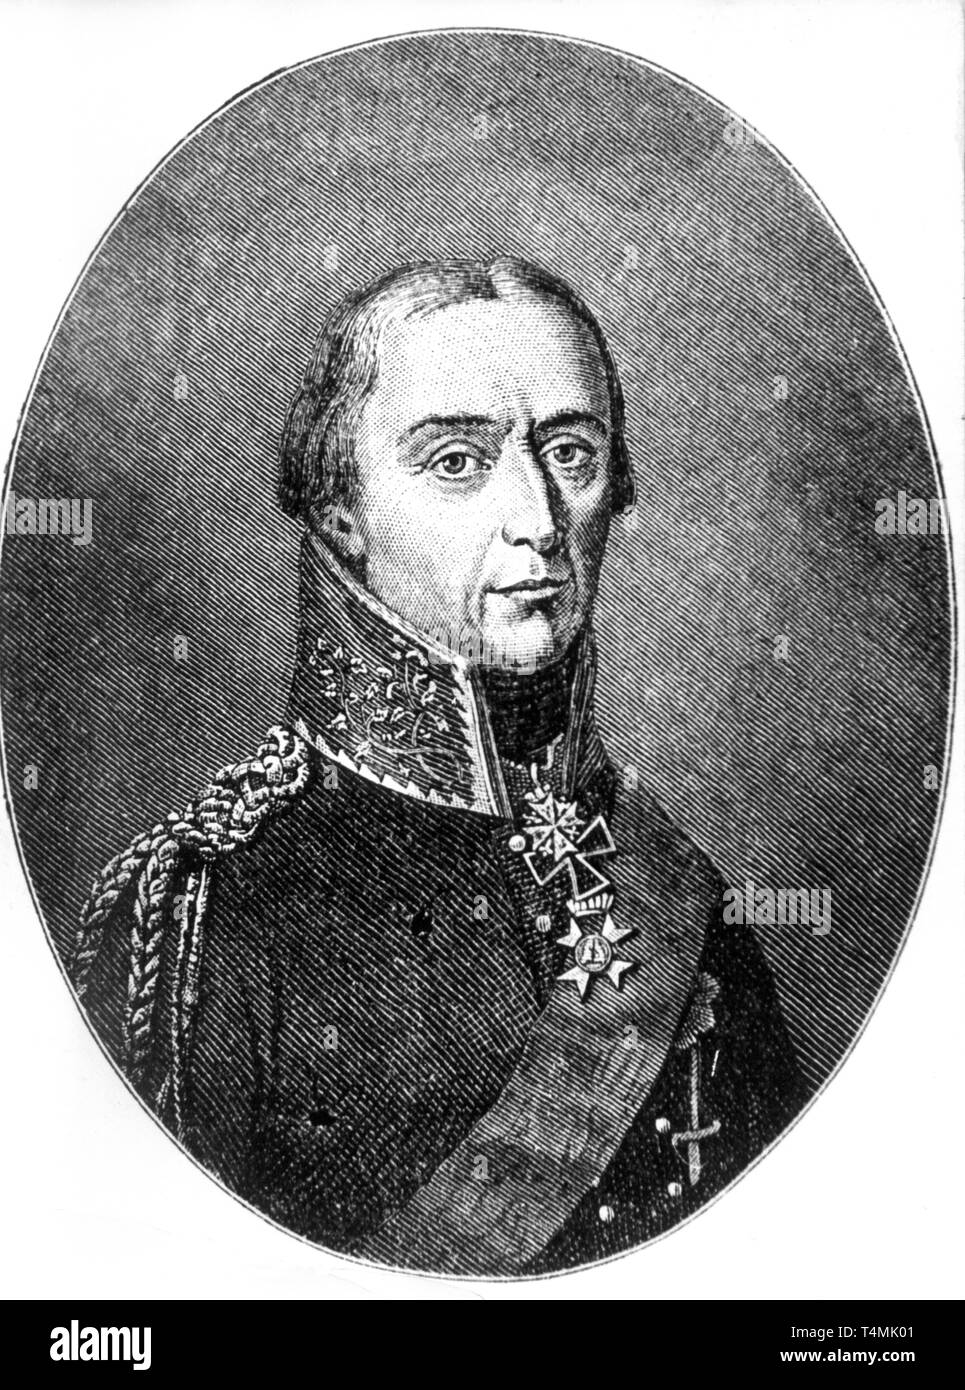 Friedrich Wilhelm Graf Bülow von Dennewitz (1755-1816) war preussischer General, der in den Befreiungskriegen gegen Napoleon bedeutende militärische Erfolge errang. Undatierte Aufnahme. +++(c) dpa - Report+++ | usage worldwide Stock Photo